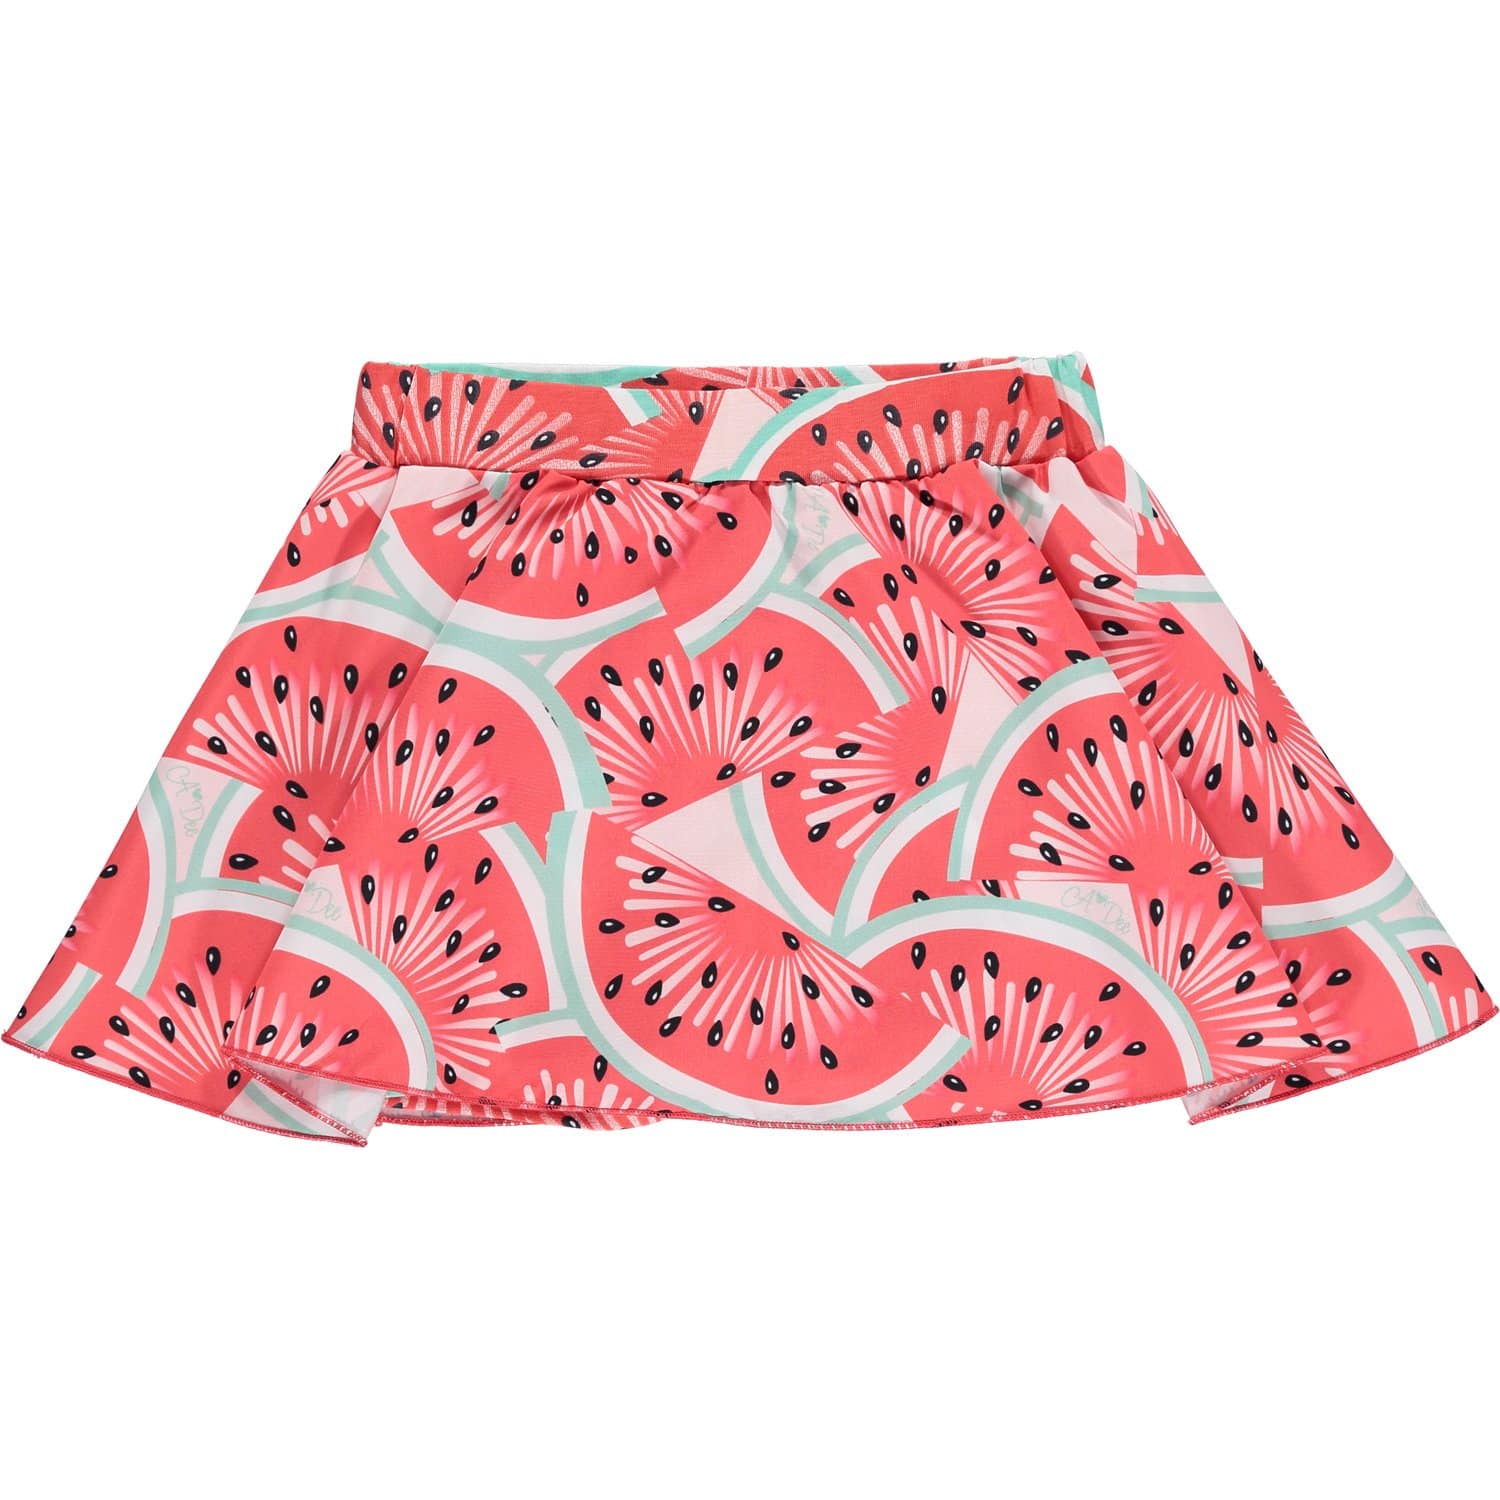 A DEE - Eve Watermelon Skort Set - Pink